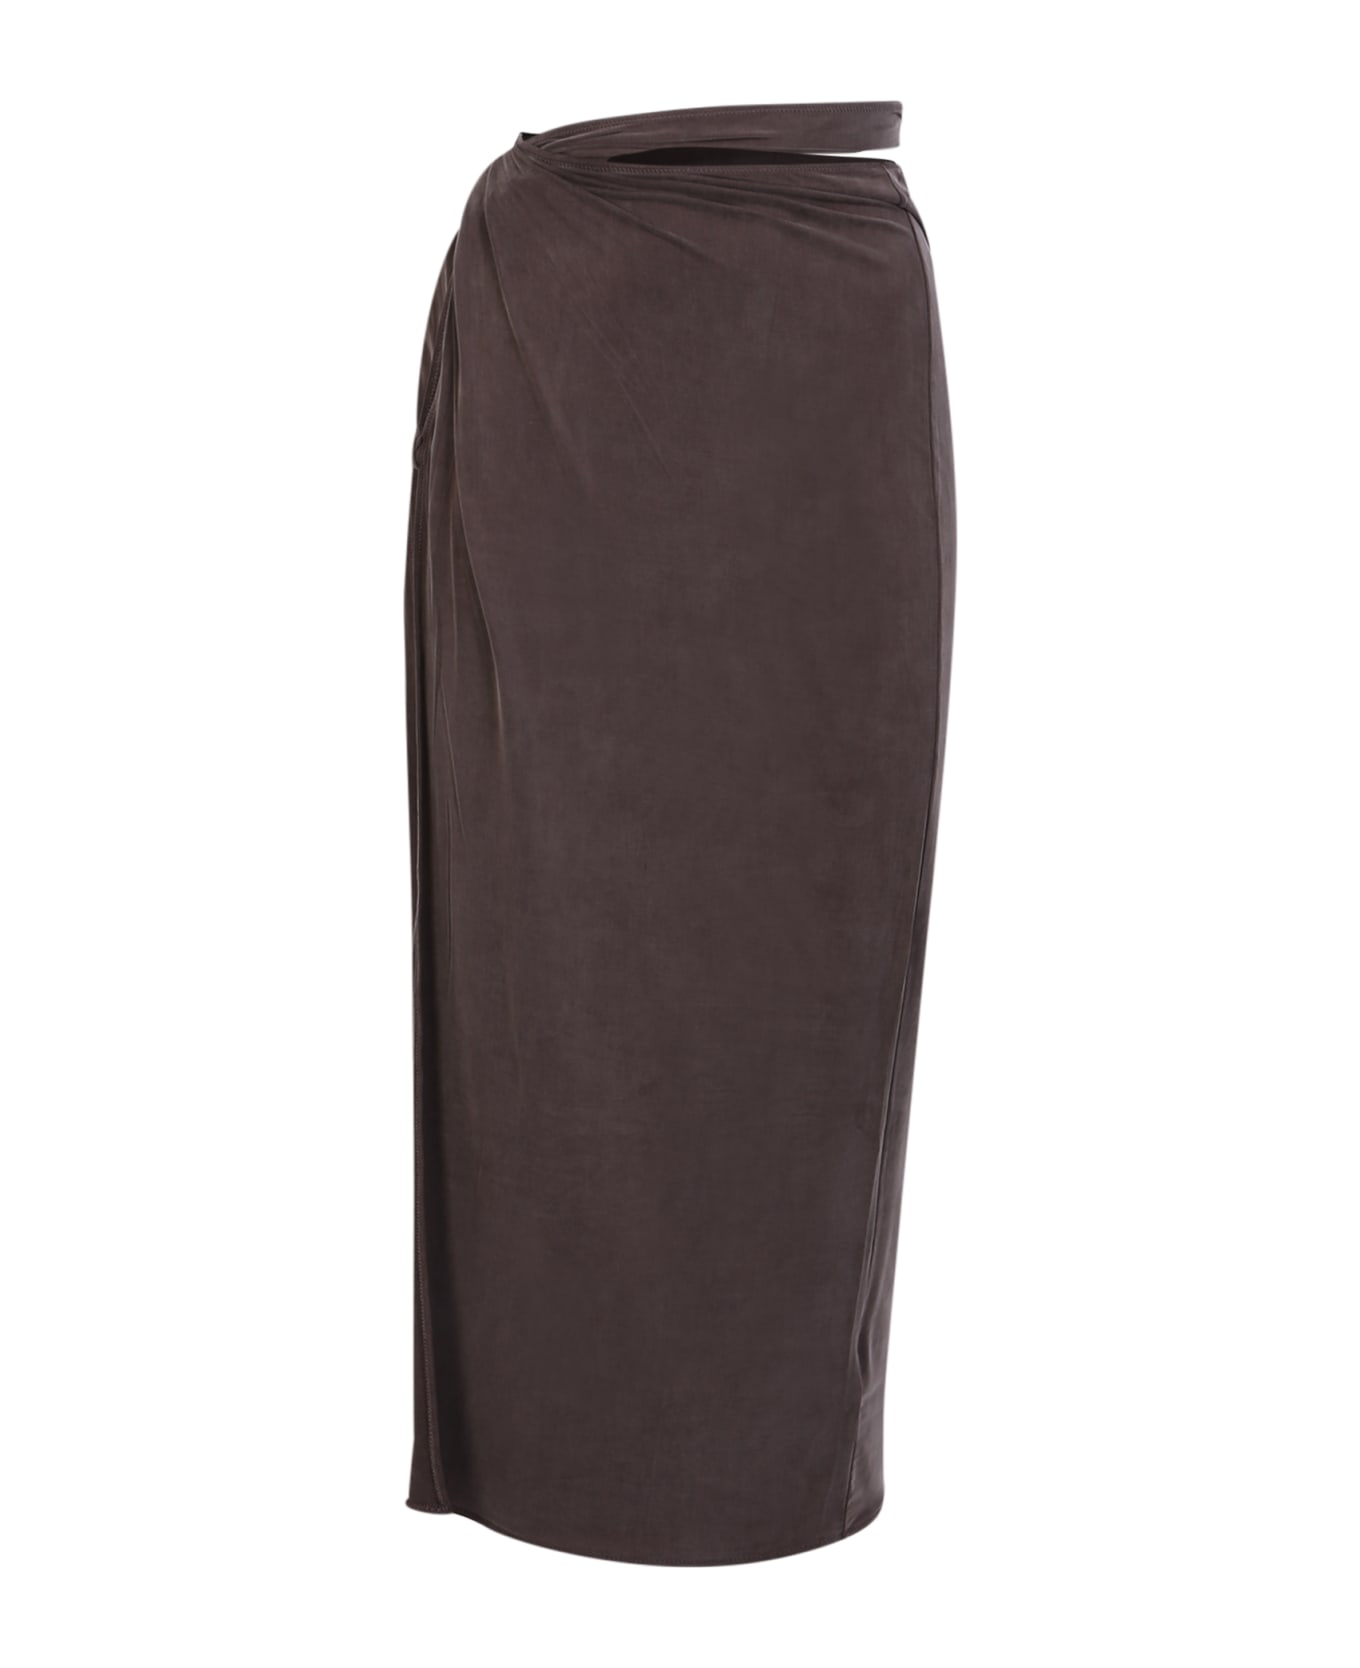 Jacquemus Skirt - Brown スカート